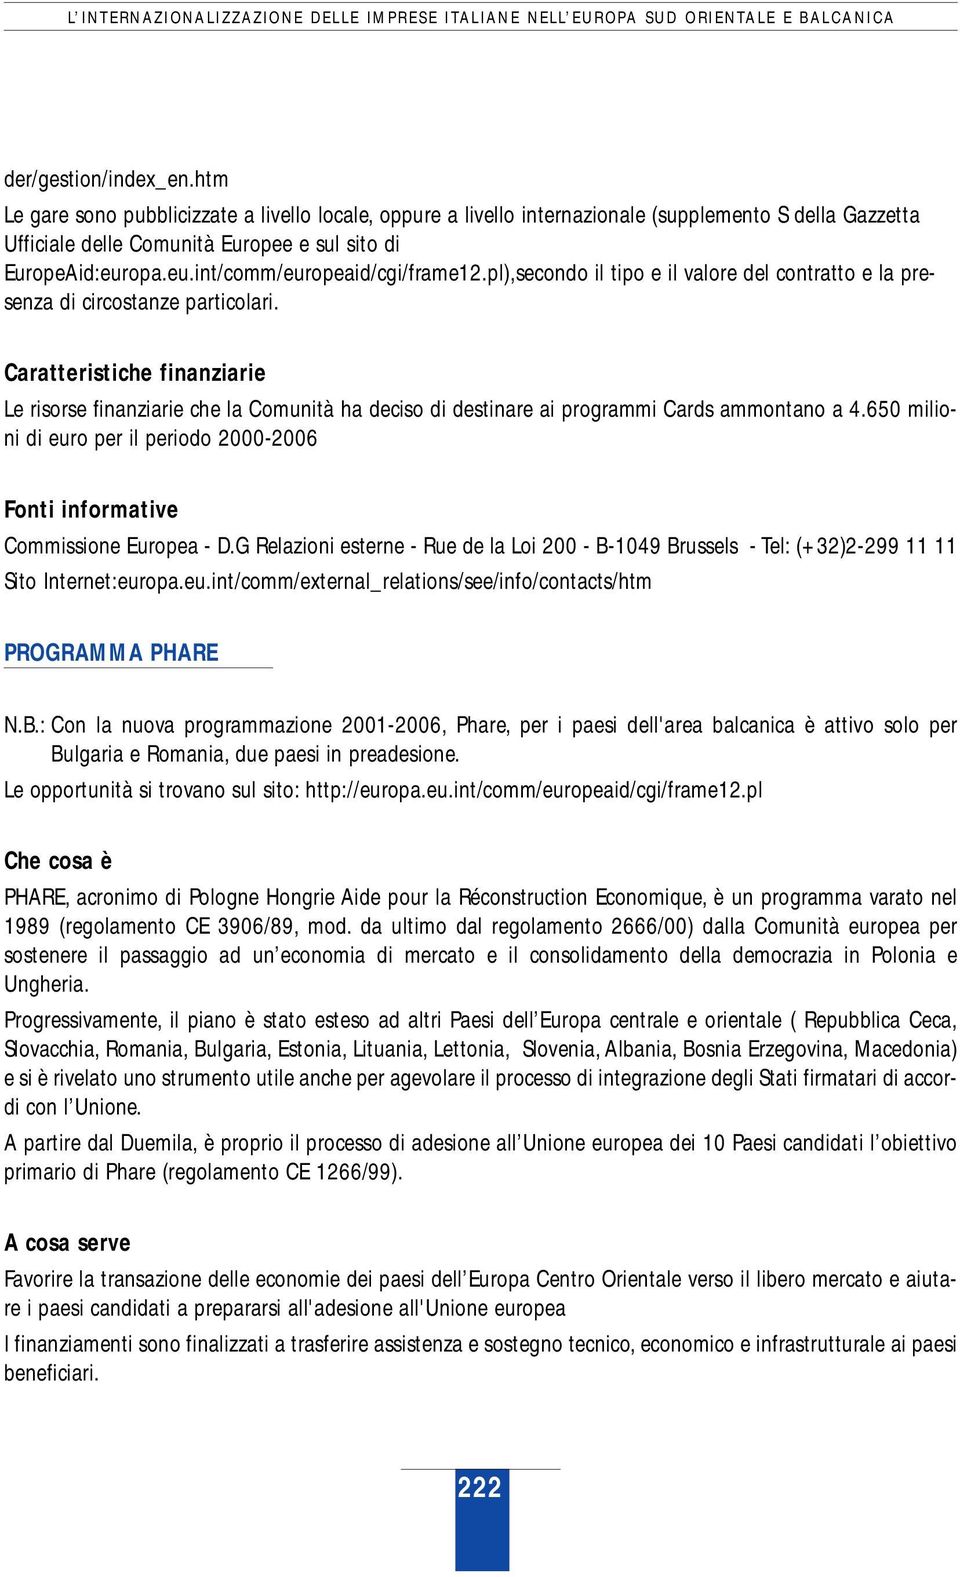 opa.eu.int/comm/europeaid/cgi/frame12.pl),secondo il tipo e il valore del contratto e la presenza di circostanze particolari.